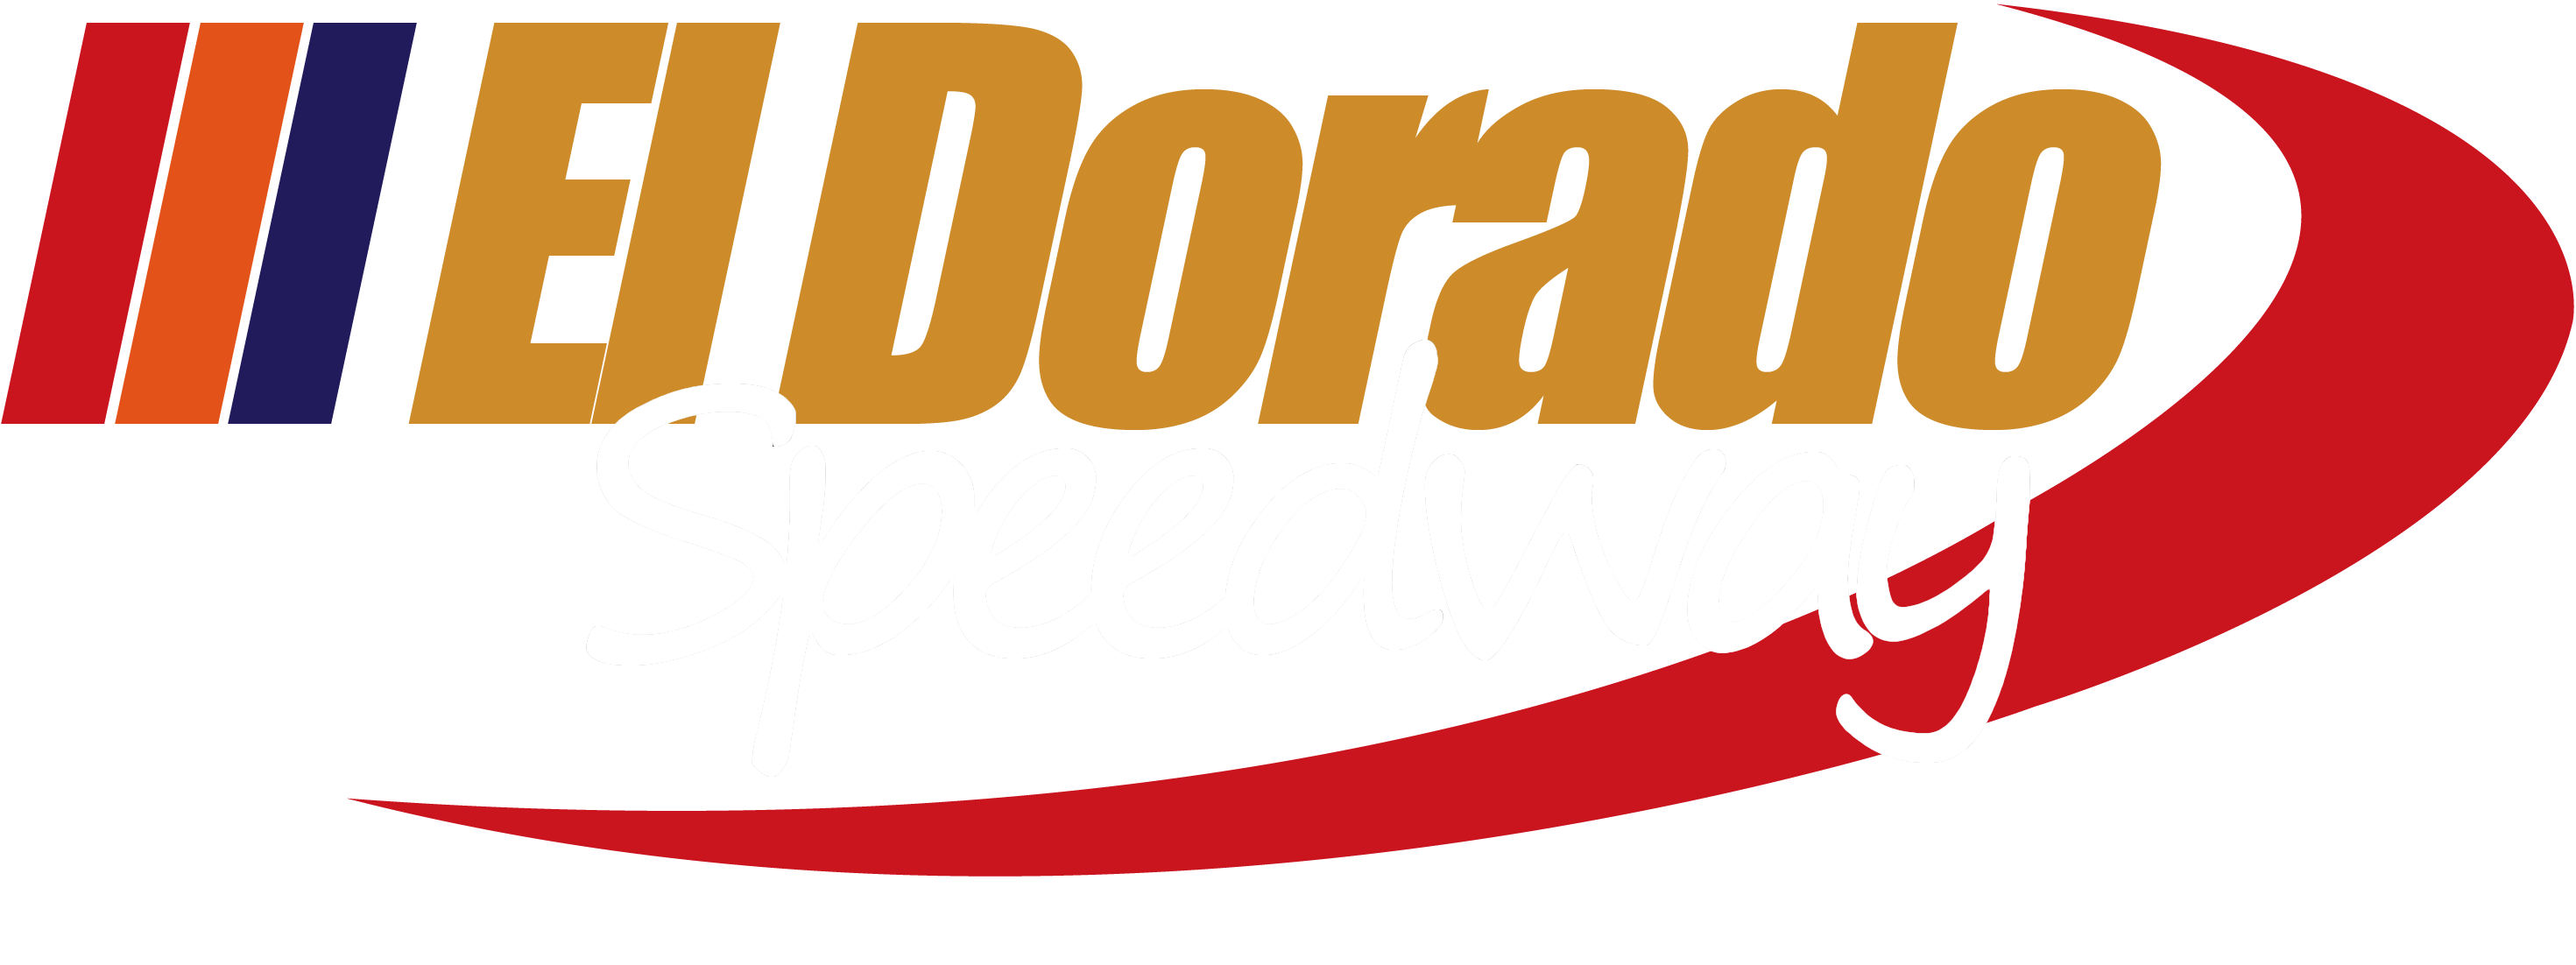 El Dorado Speedway